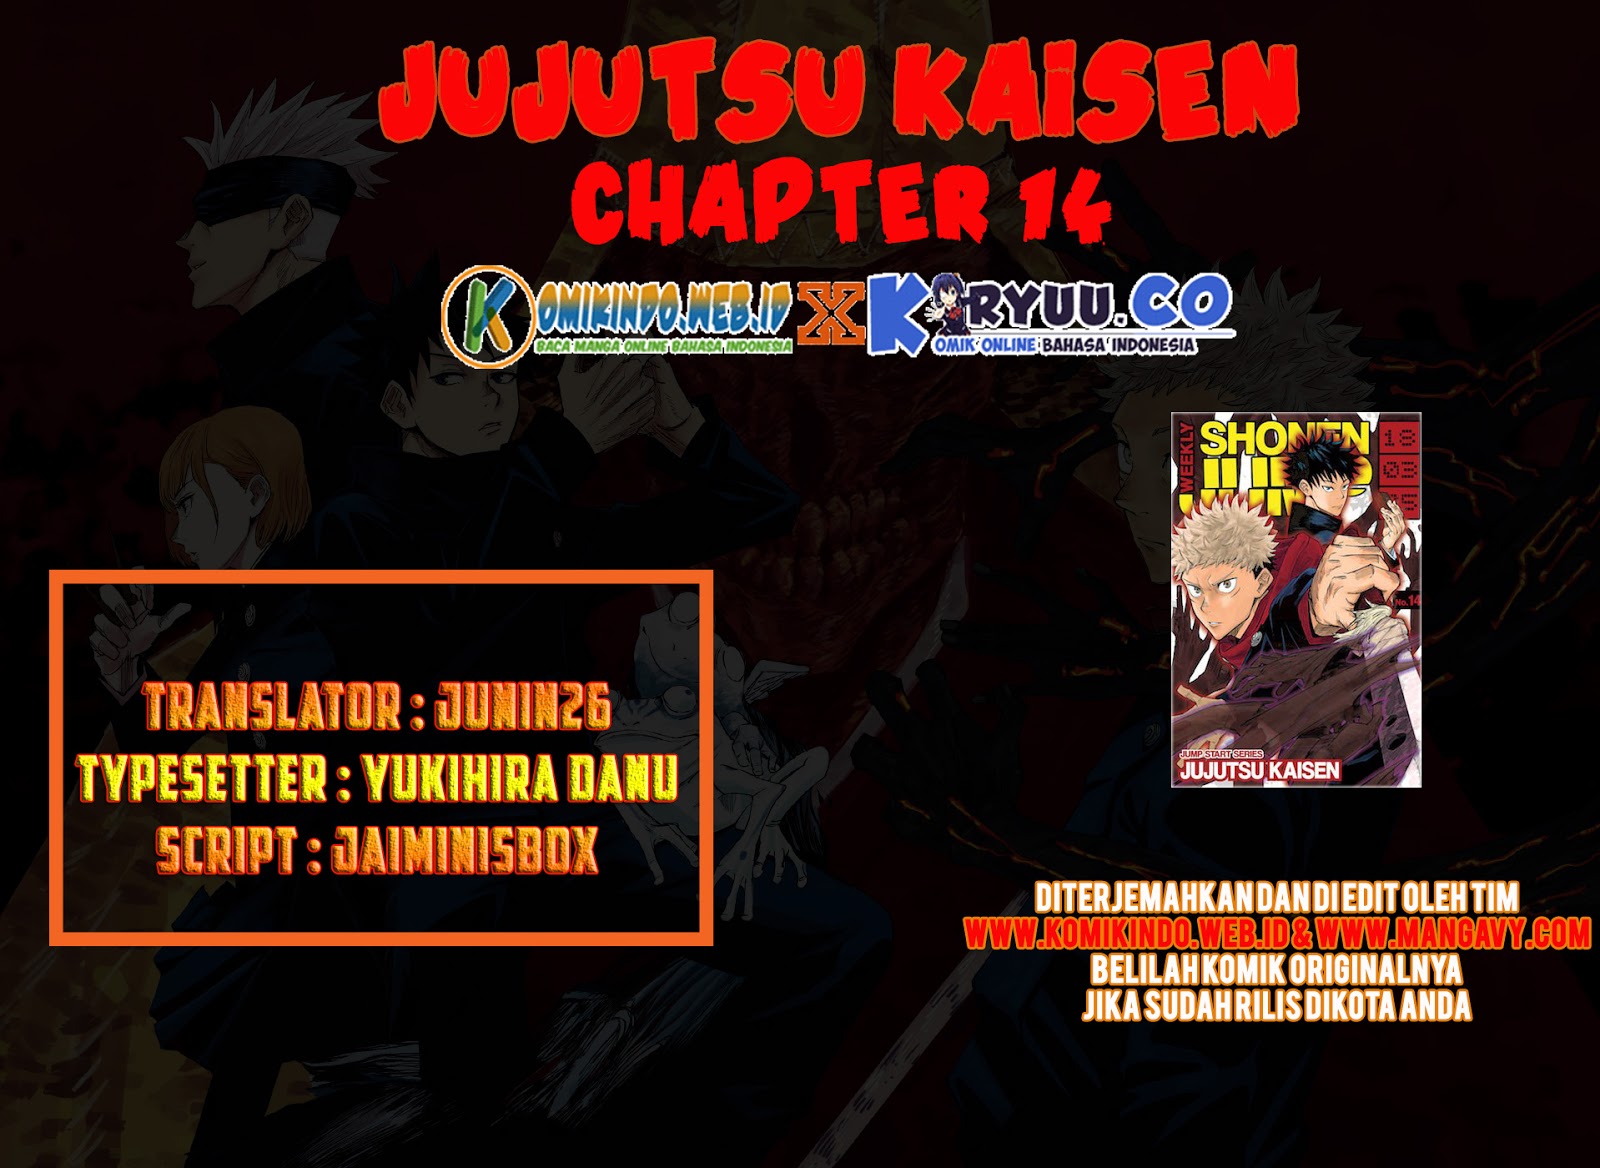 Jujutsu Kaisen Chapter 14